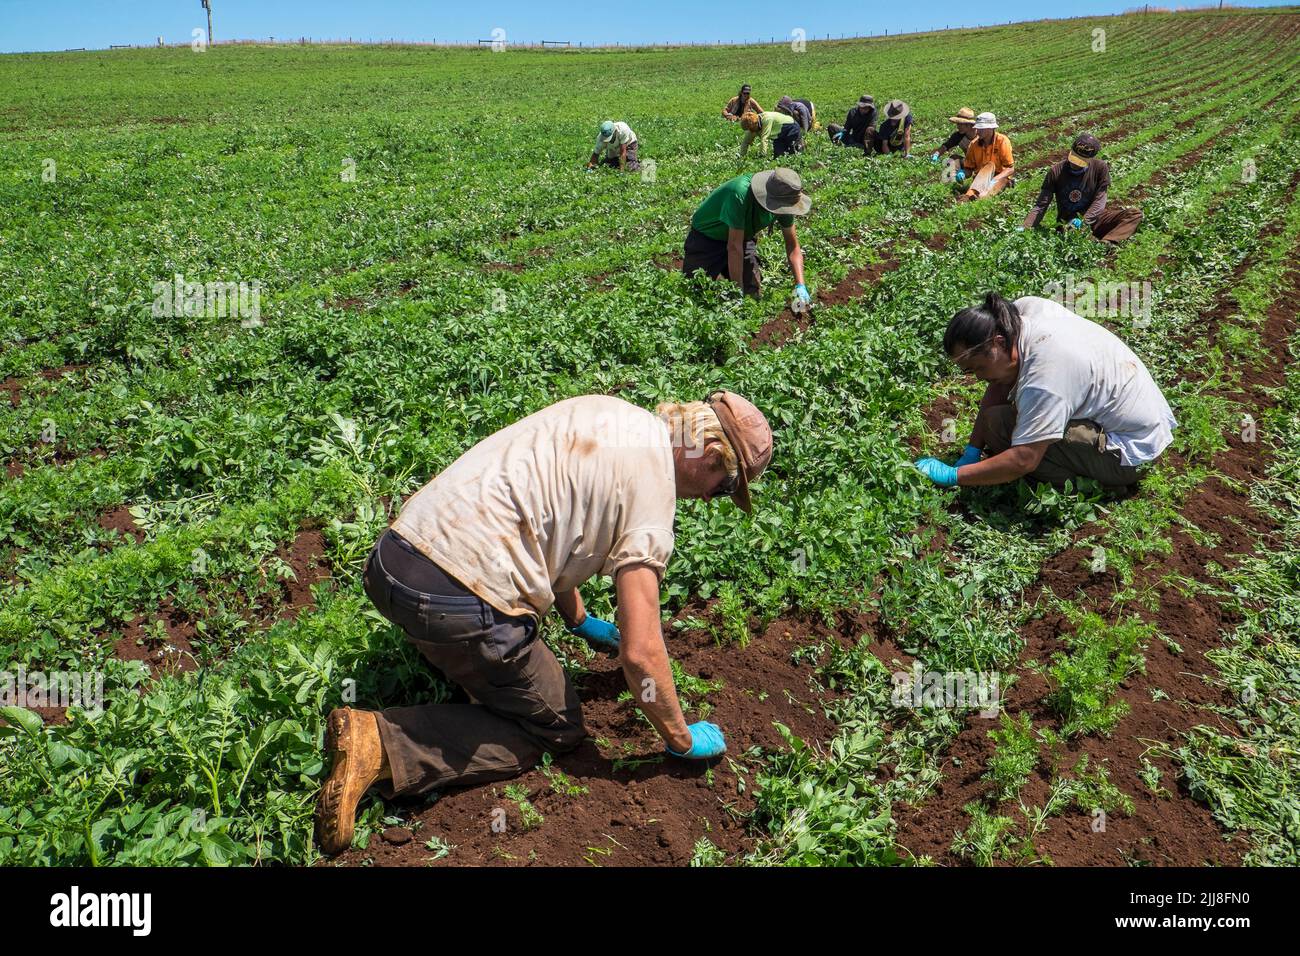 Mochileros trabajadores agrícolas casuales desmalezando a mano zanahorias orgánicas en Tasmania Foto de stock